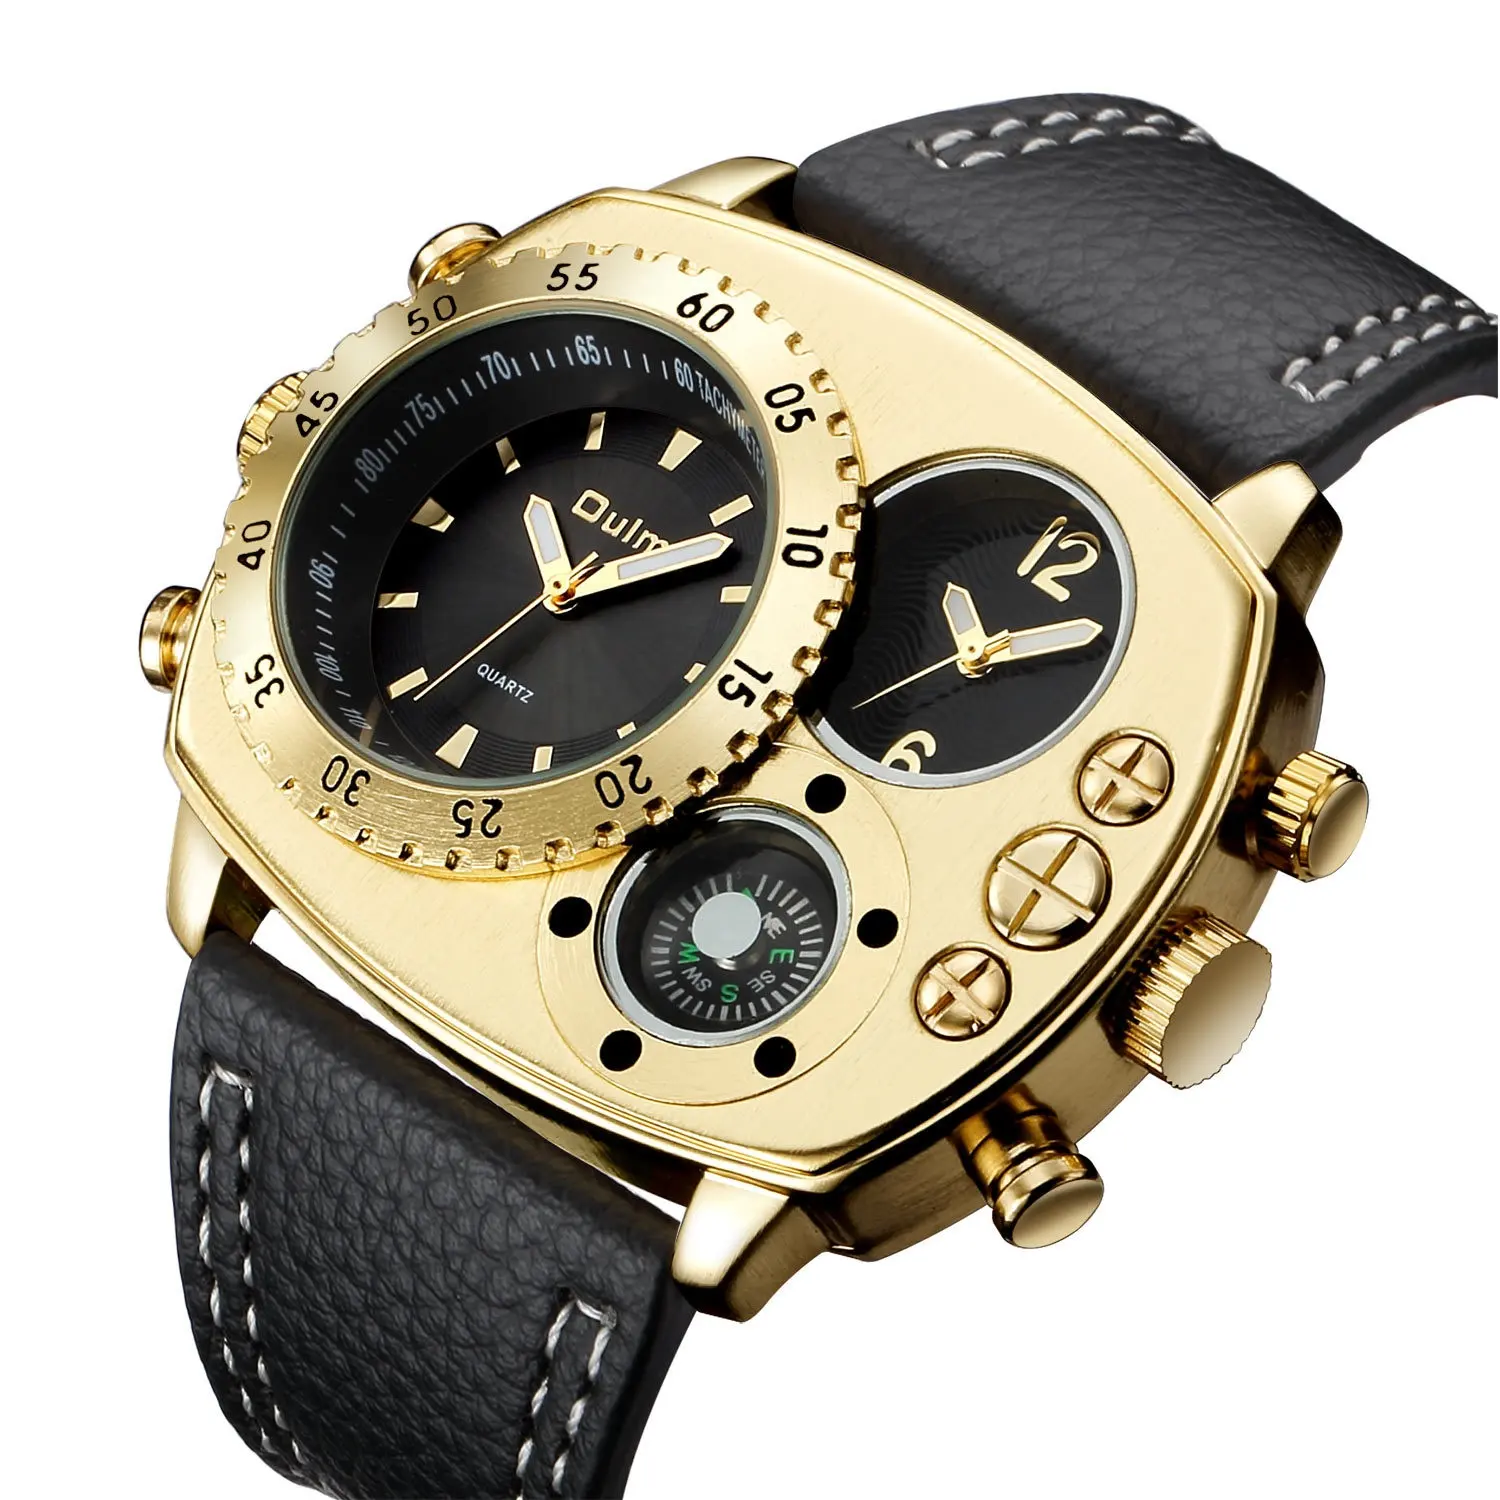 Unique Shape Design Series Oulm HP9865 Men Wrist Watch Double Time Zones Soft PU Strap Quartz Movement Compass Watches